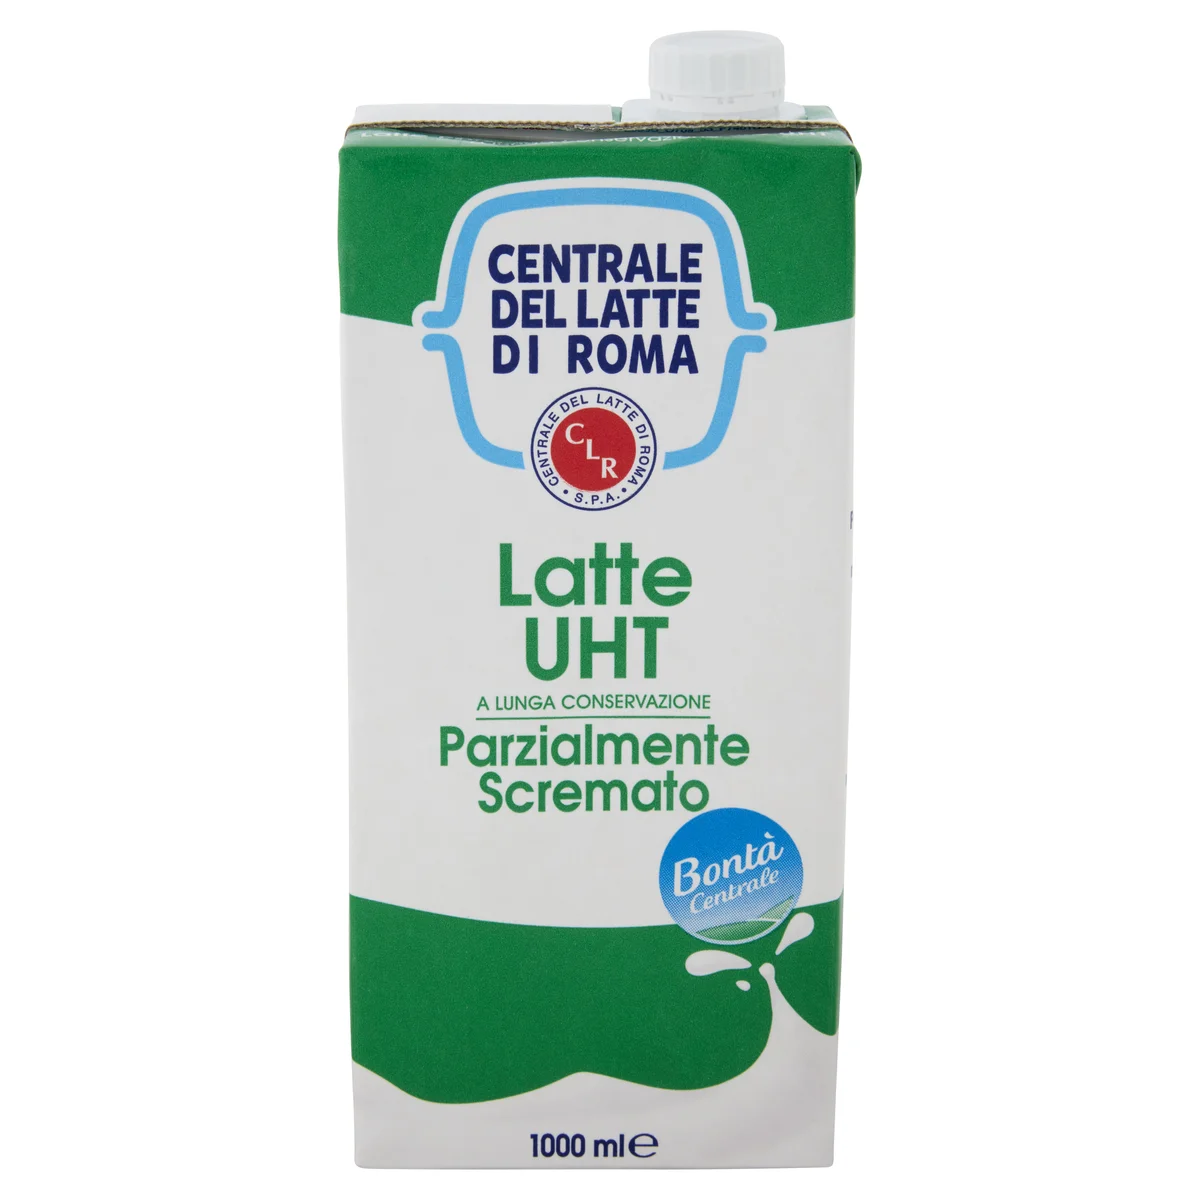 Centrale del latte di Roma Latte UHT Parzialmente Scremato a lunga